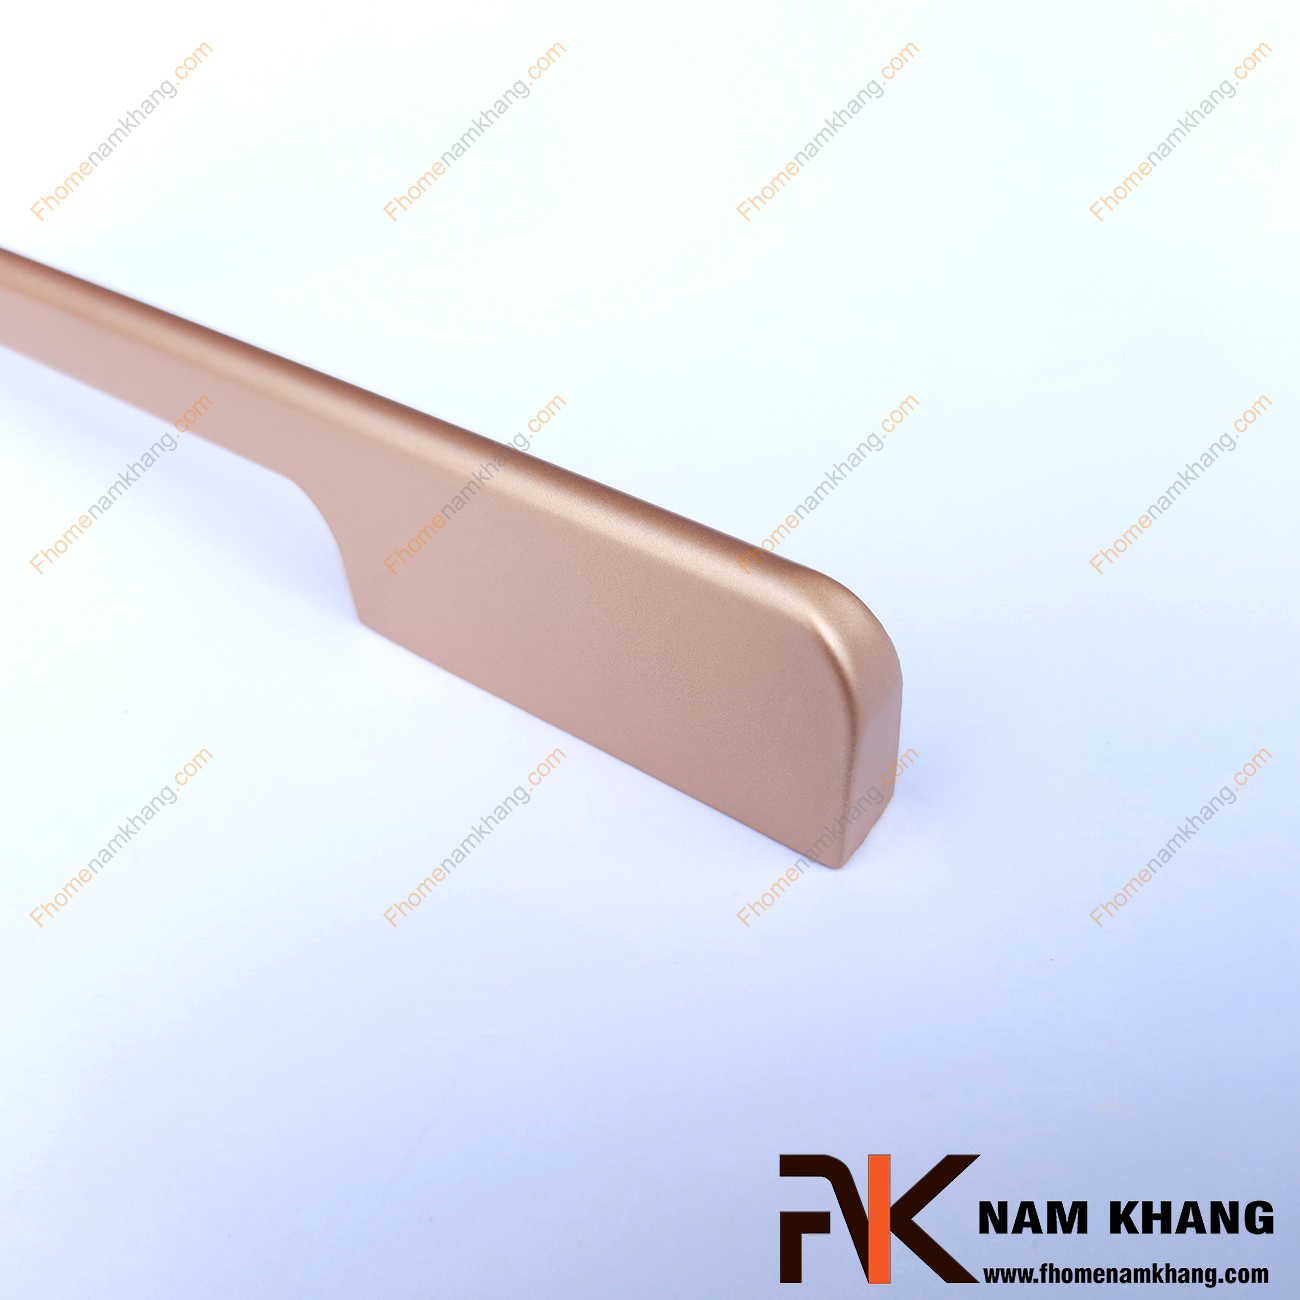 Tay nắm tủ dạng thanh trơn màu vàng đồng NK260-NV là một dòng tay nắm tủ theo bộ với nhiều kích thước được sử dụng trên một hoặc nhiều loại phong cách tủ khác nhau tùy nhu cầu thiết kế.